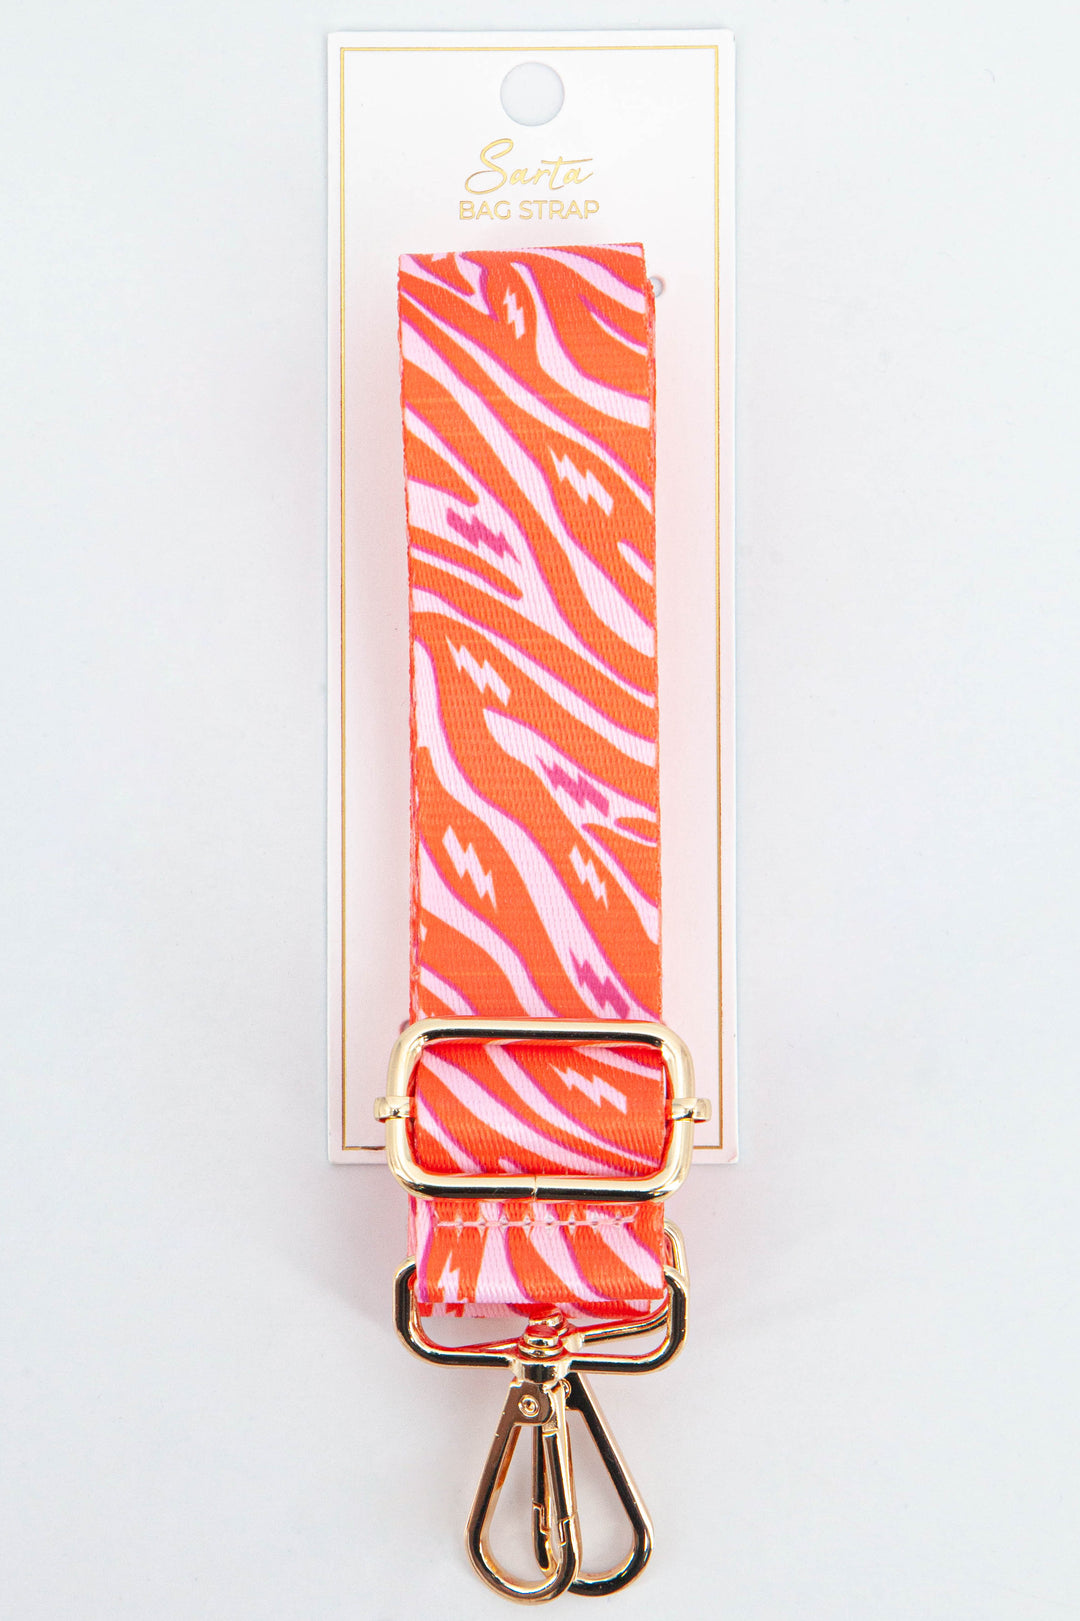 orange and pink zebra and lightning bolt pattern bag strap with gold hardware